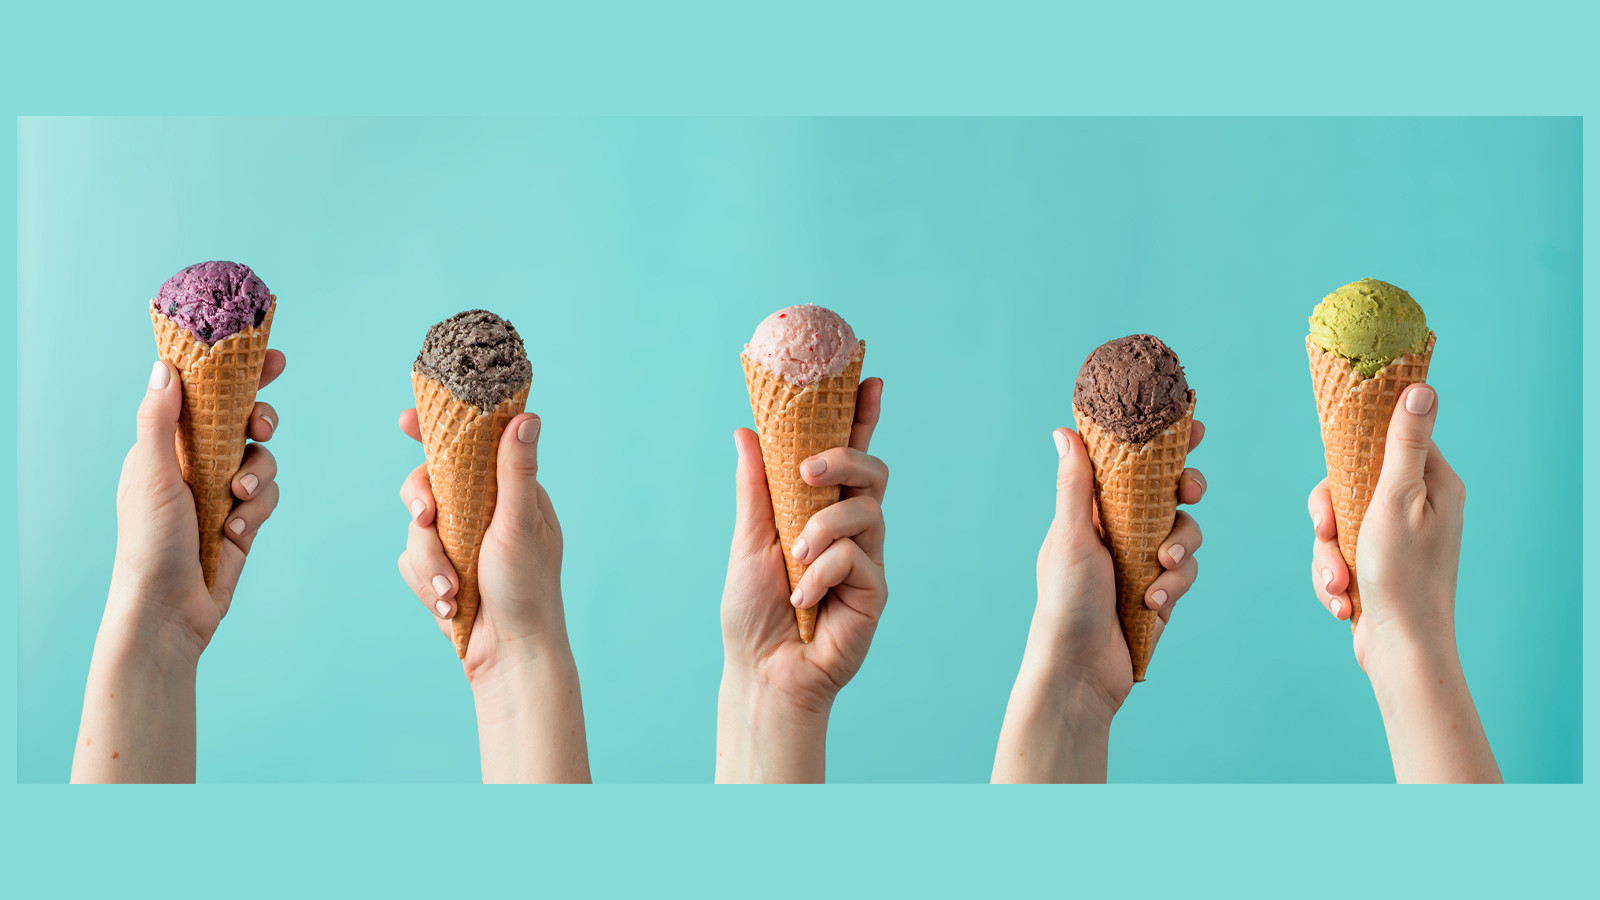 Özgürlüğe düşkünler vanilyalı seviyor karizmatikler çikolatalı… Dondurma seçiminiz kişiliğinizi ortaya koyuyor